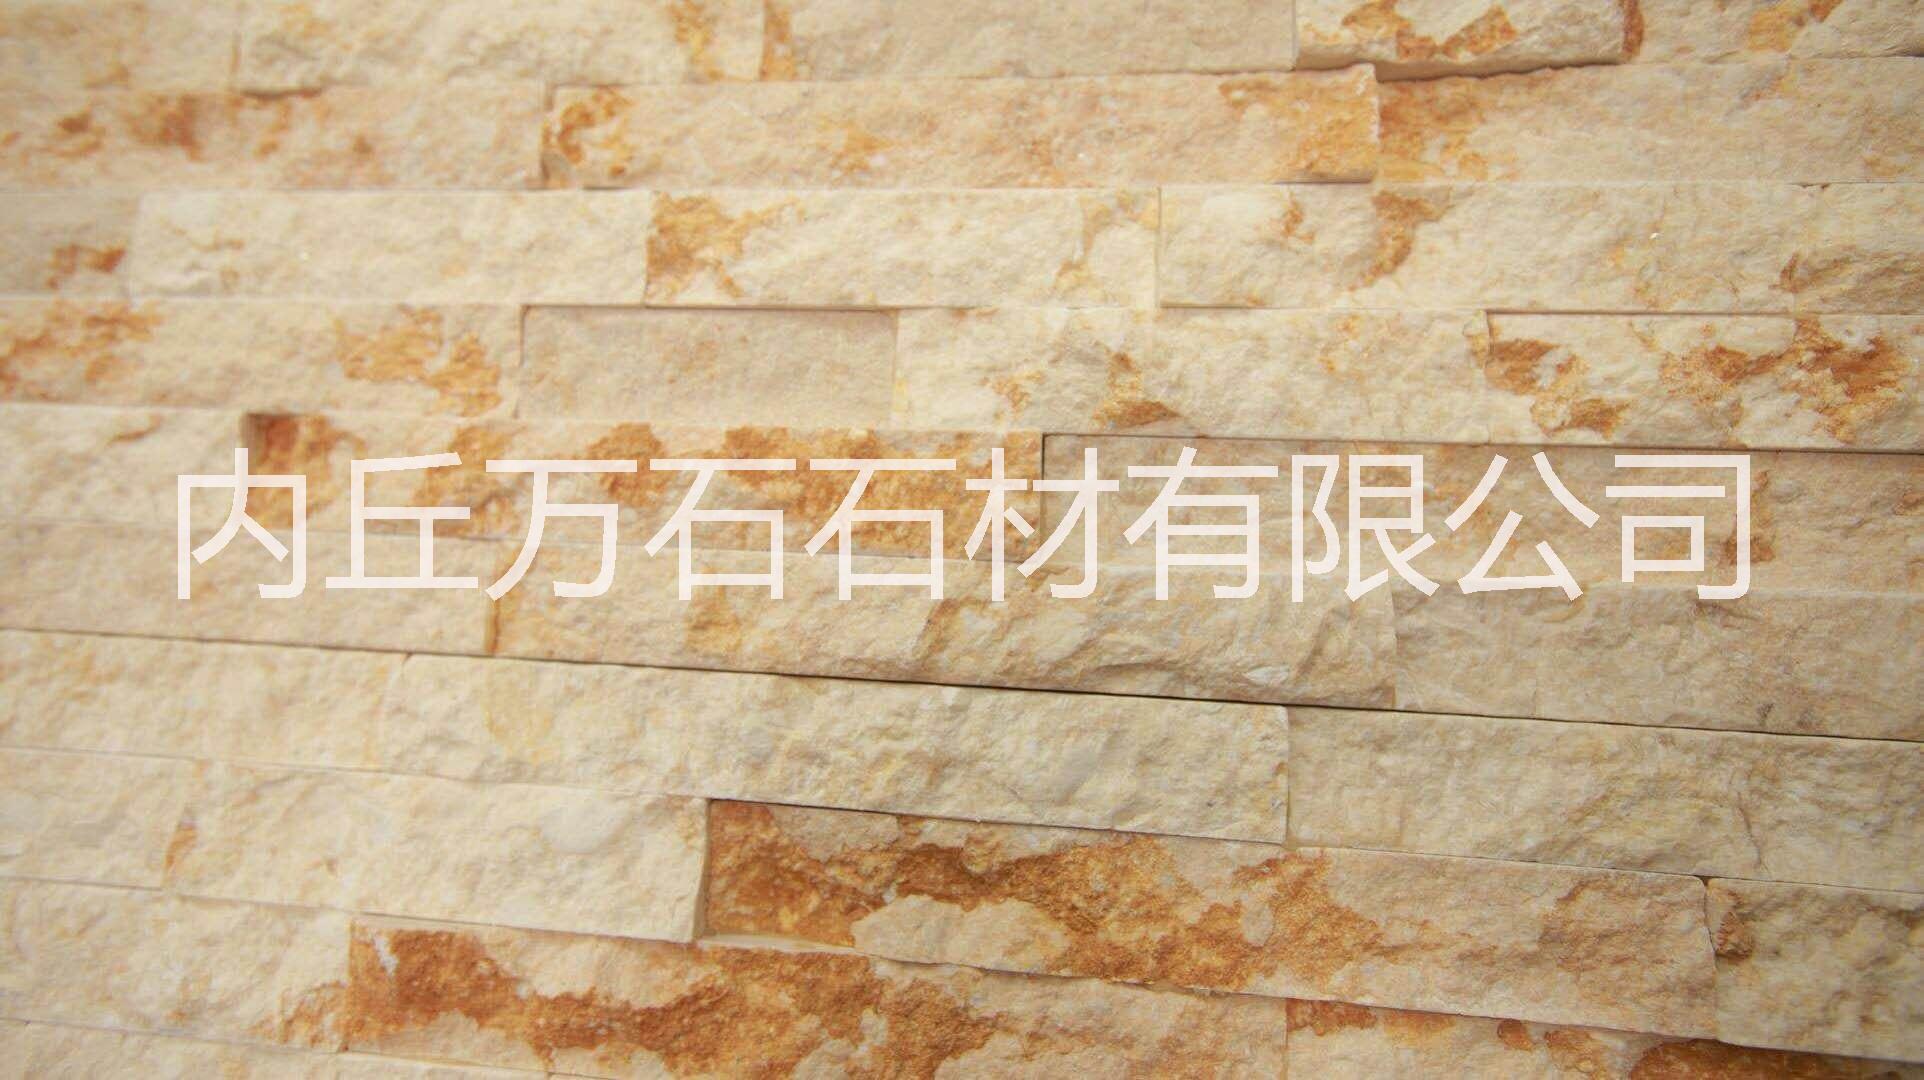 云南天然文化石厂家直销咨询报价电话号码 文化石生产加工哪家比较好图片